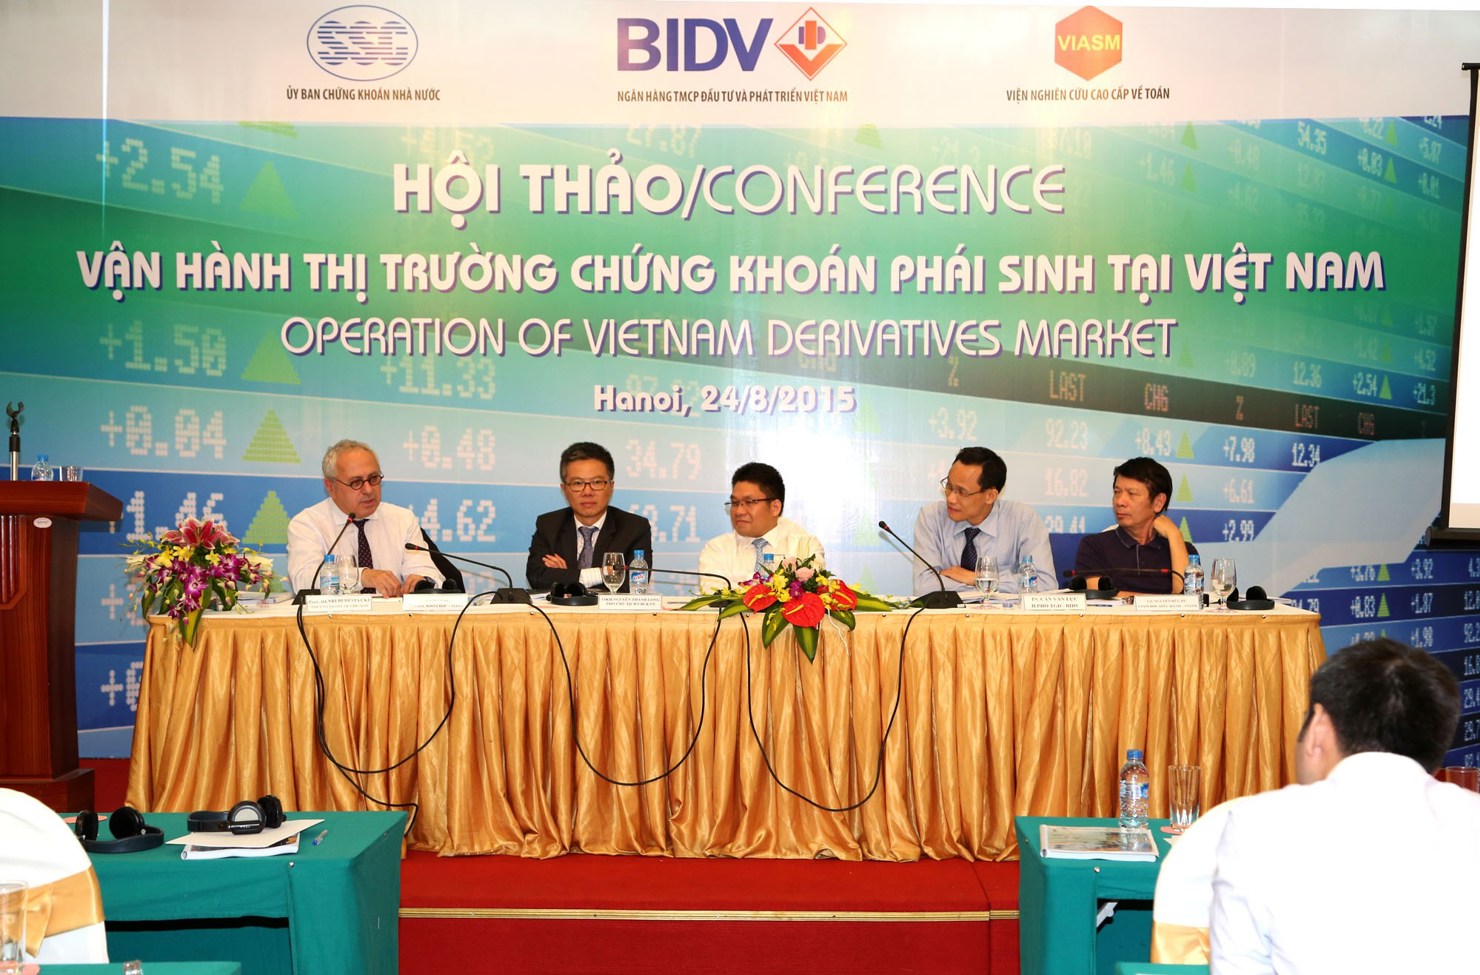 Việt Nam đã thu hút hơn 22 triệu USD trong vòng 10 tháng đầu năm 2015, giá trị danh mục của nhà đầu tư nước ngoài cũng đạt 15 tỷ USD.